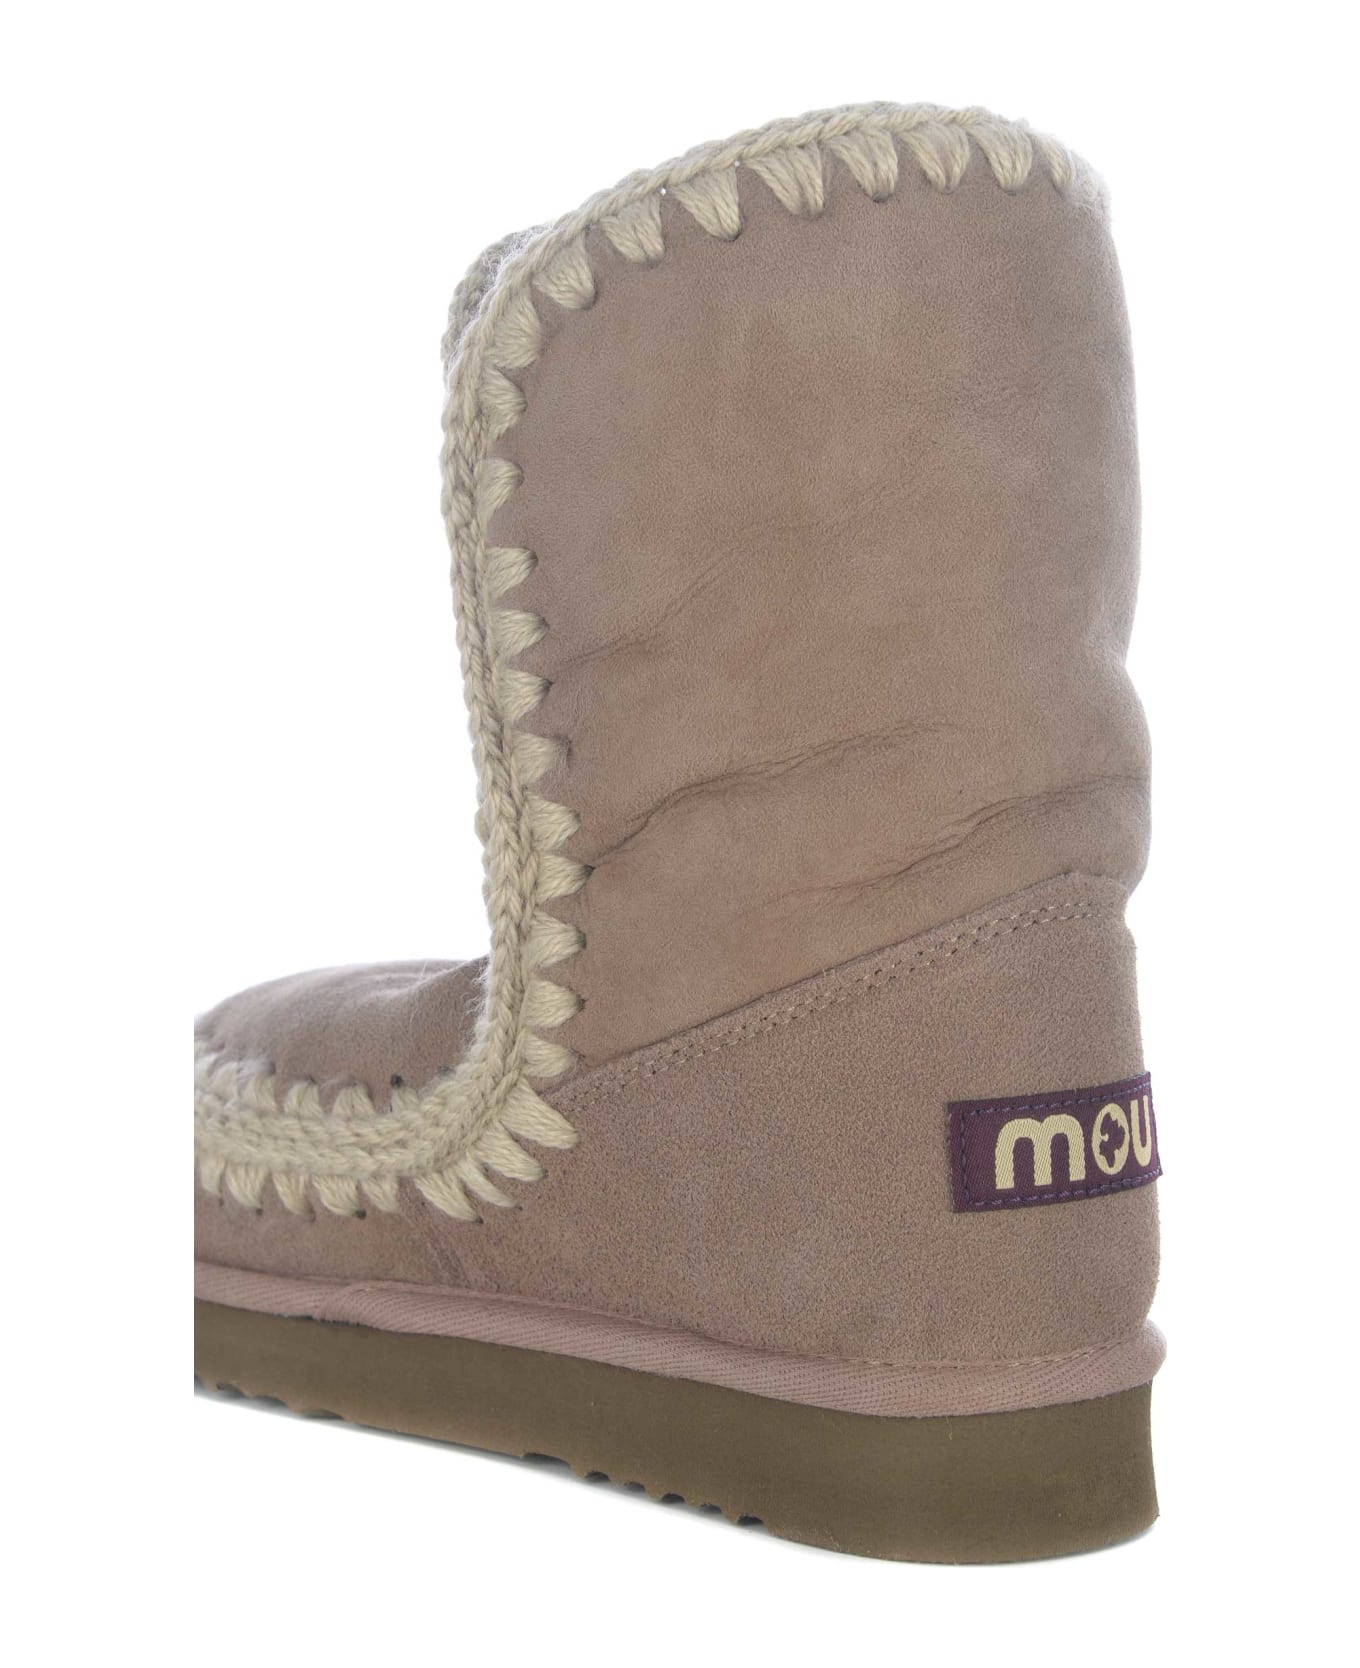 Mou Boots Mou "eskimo24" Made In Suede - Tortora chiaro